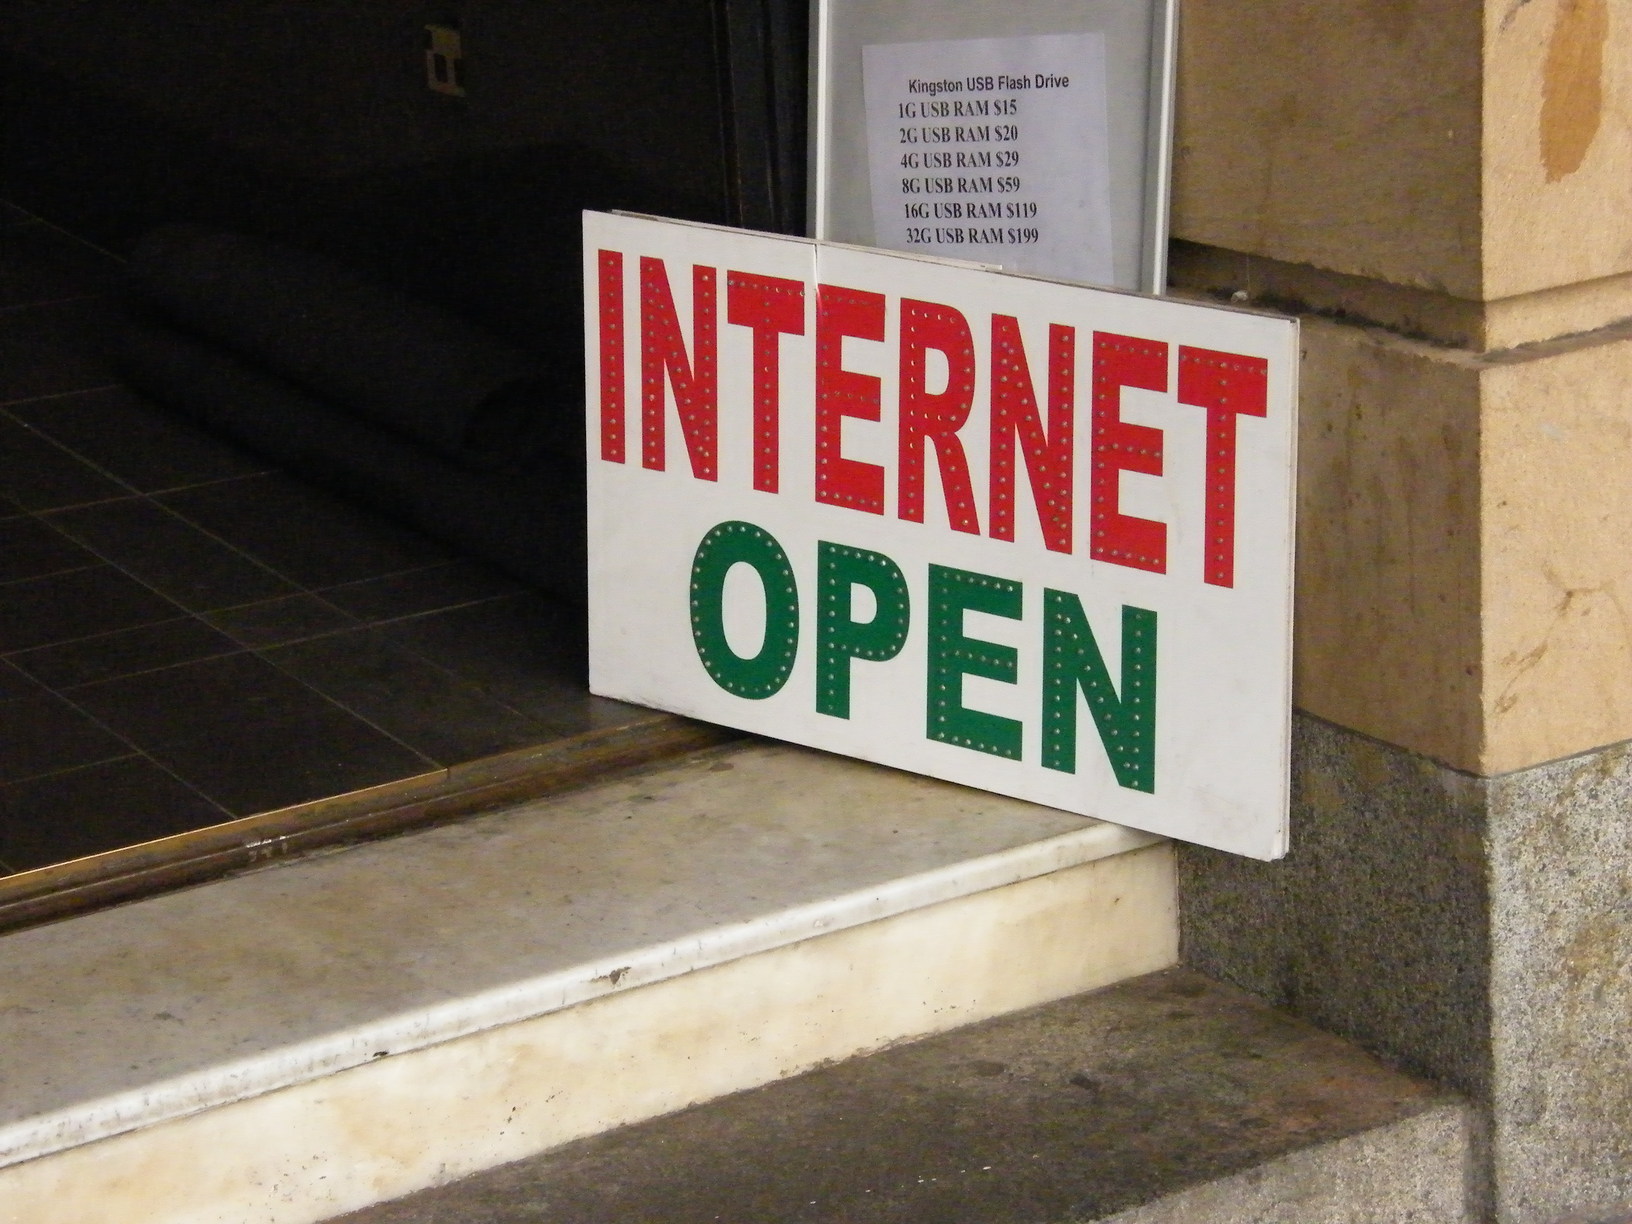 Internet Open by Blaise Alleyne